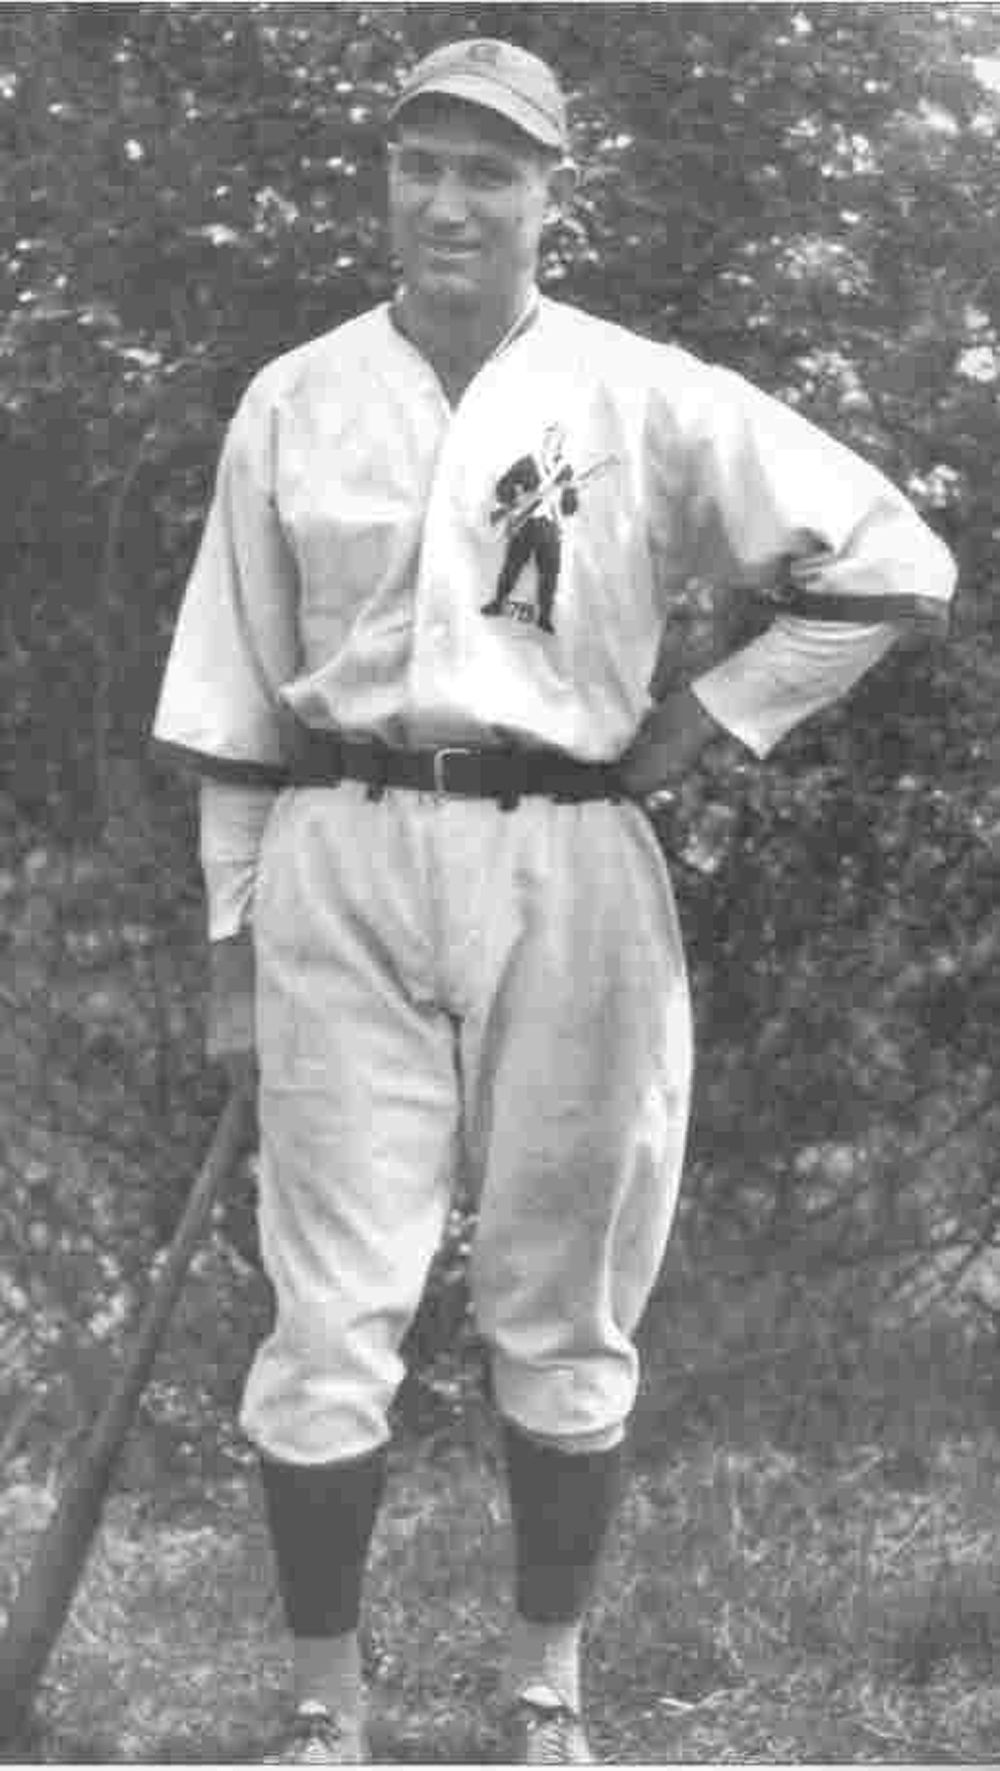 early baseball uniforms